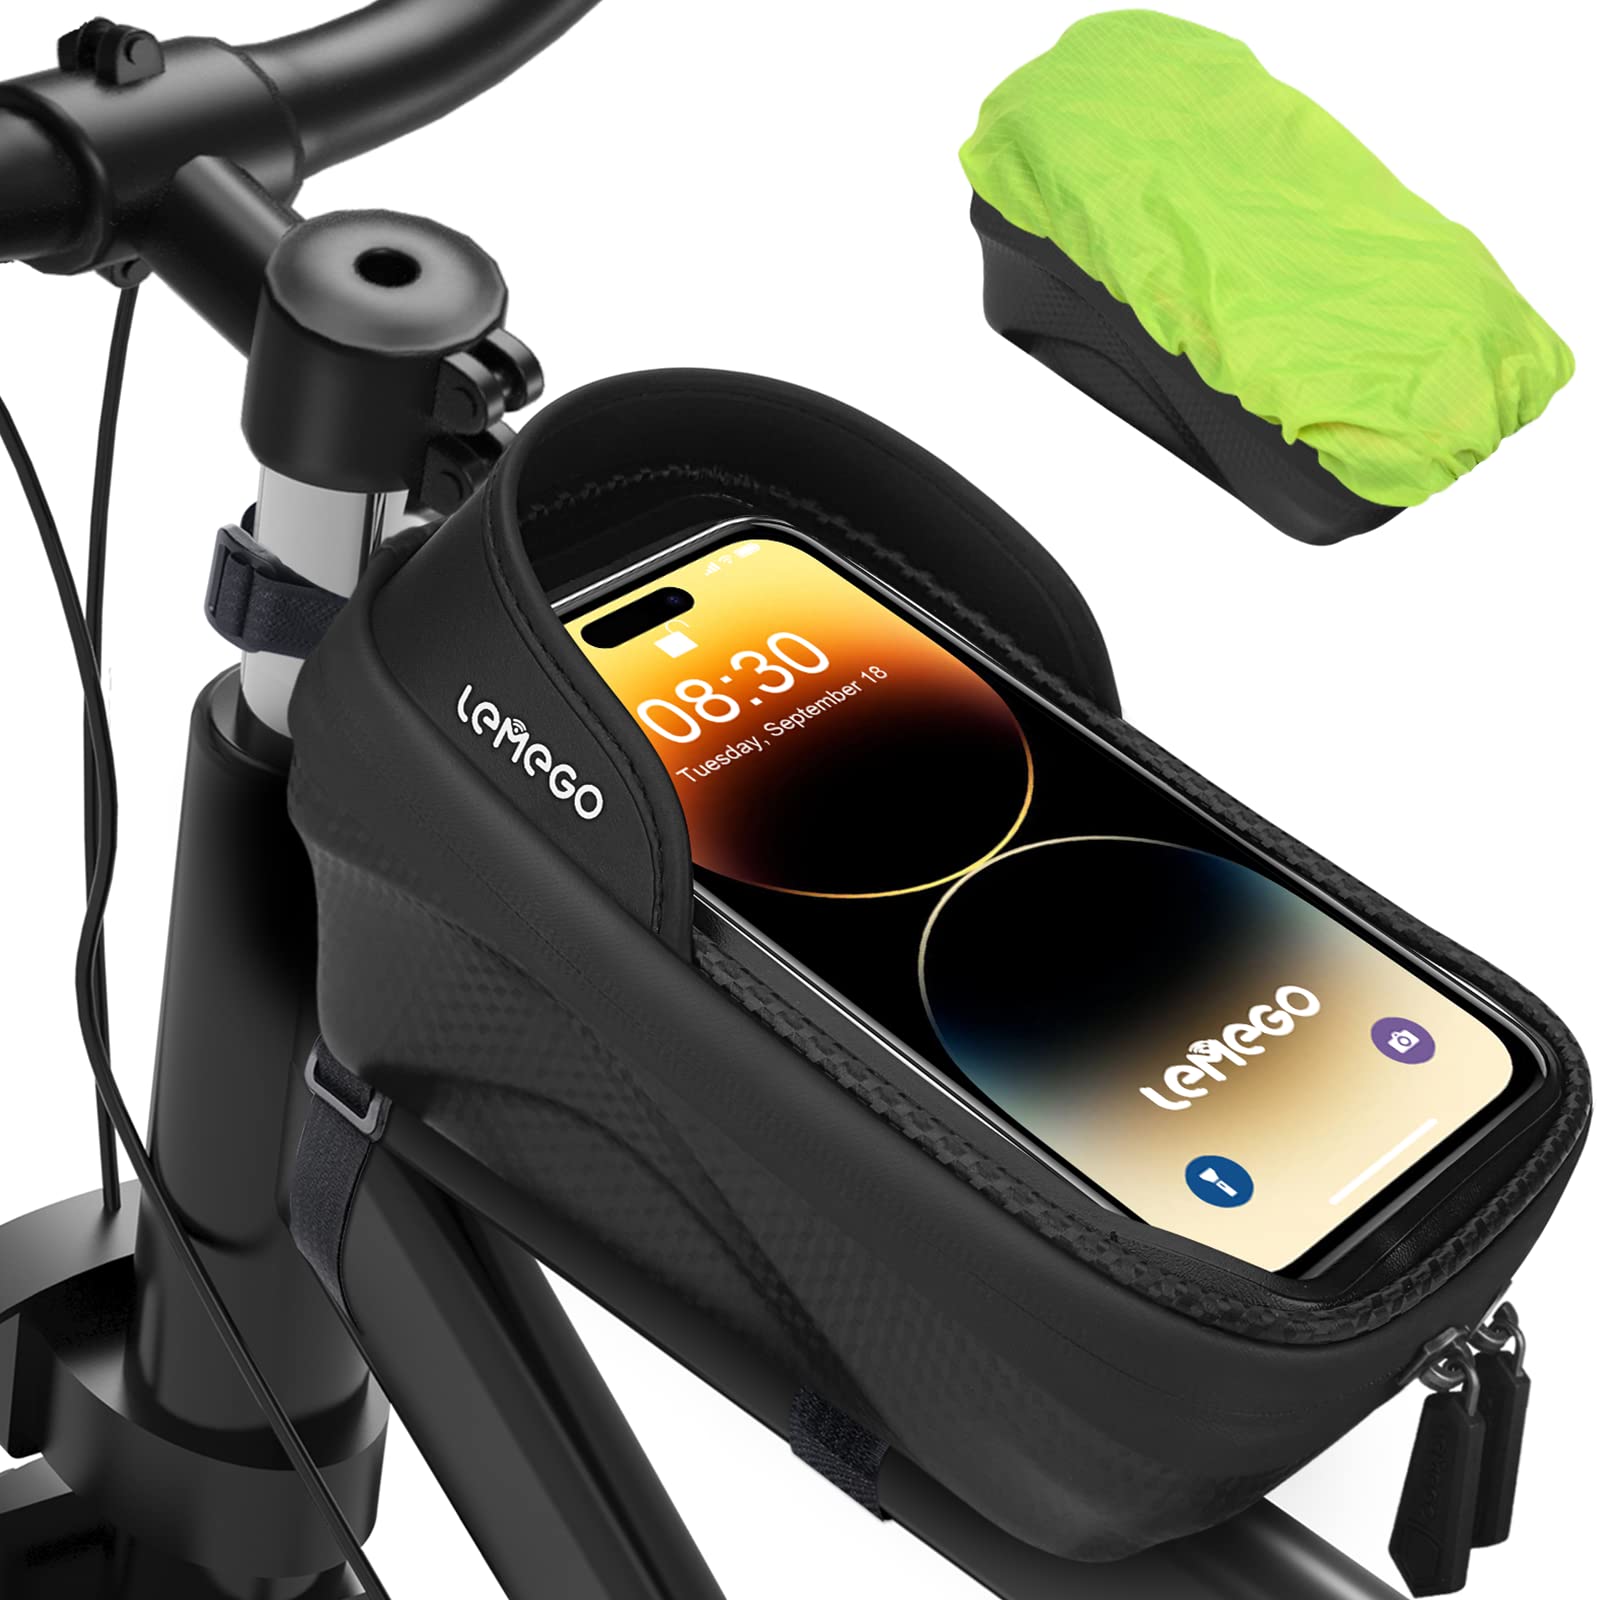 Wasserdicht Rahmentasche Fahrrad Handyhalterung Fahrradtasche Rahmen Handytasche für Smartphone bis zu 7.2 Zoll mit TPU Sensitivem Touchscreen und Regenhaube Lenkertasche Oberrohrtasche Fahrradzubehör von LEMEGO